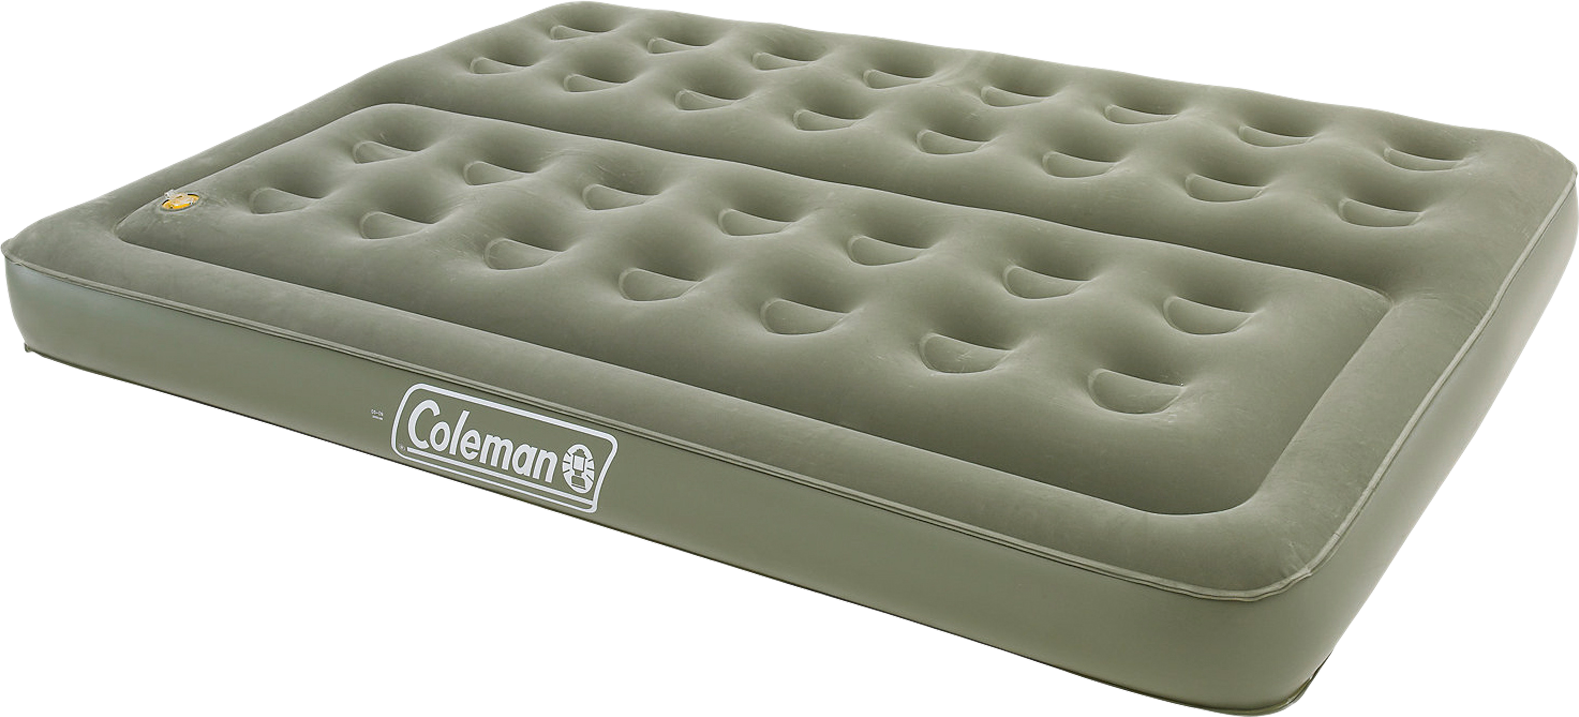 Amazon Jungle voorraad onderwerpen Coleman Maxi Comfort Bed Tweepersoons Luchtbed 198 x 137 x 22 cm - Berger  Camping